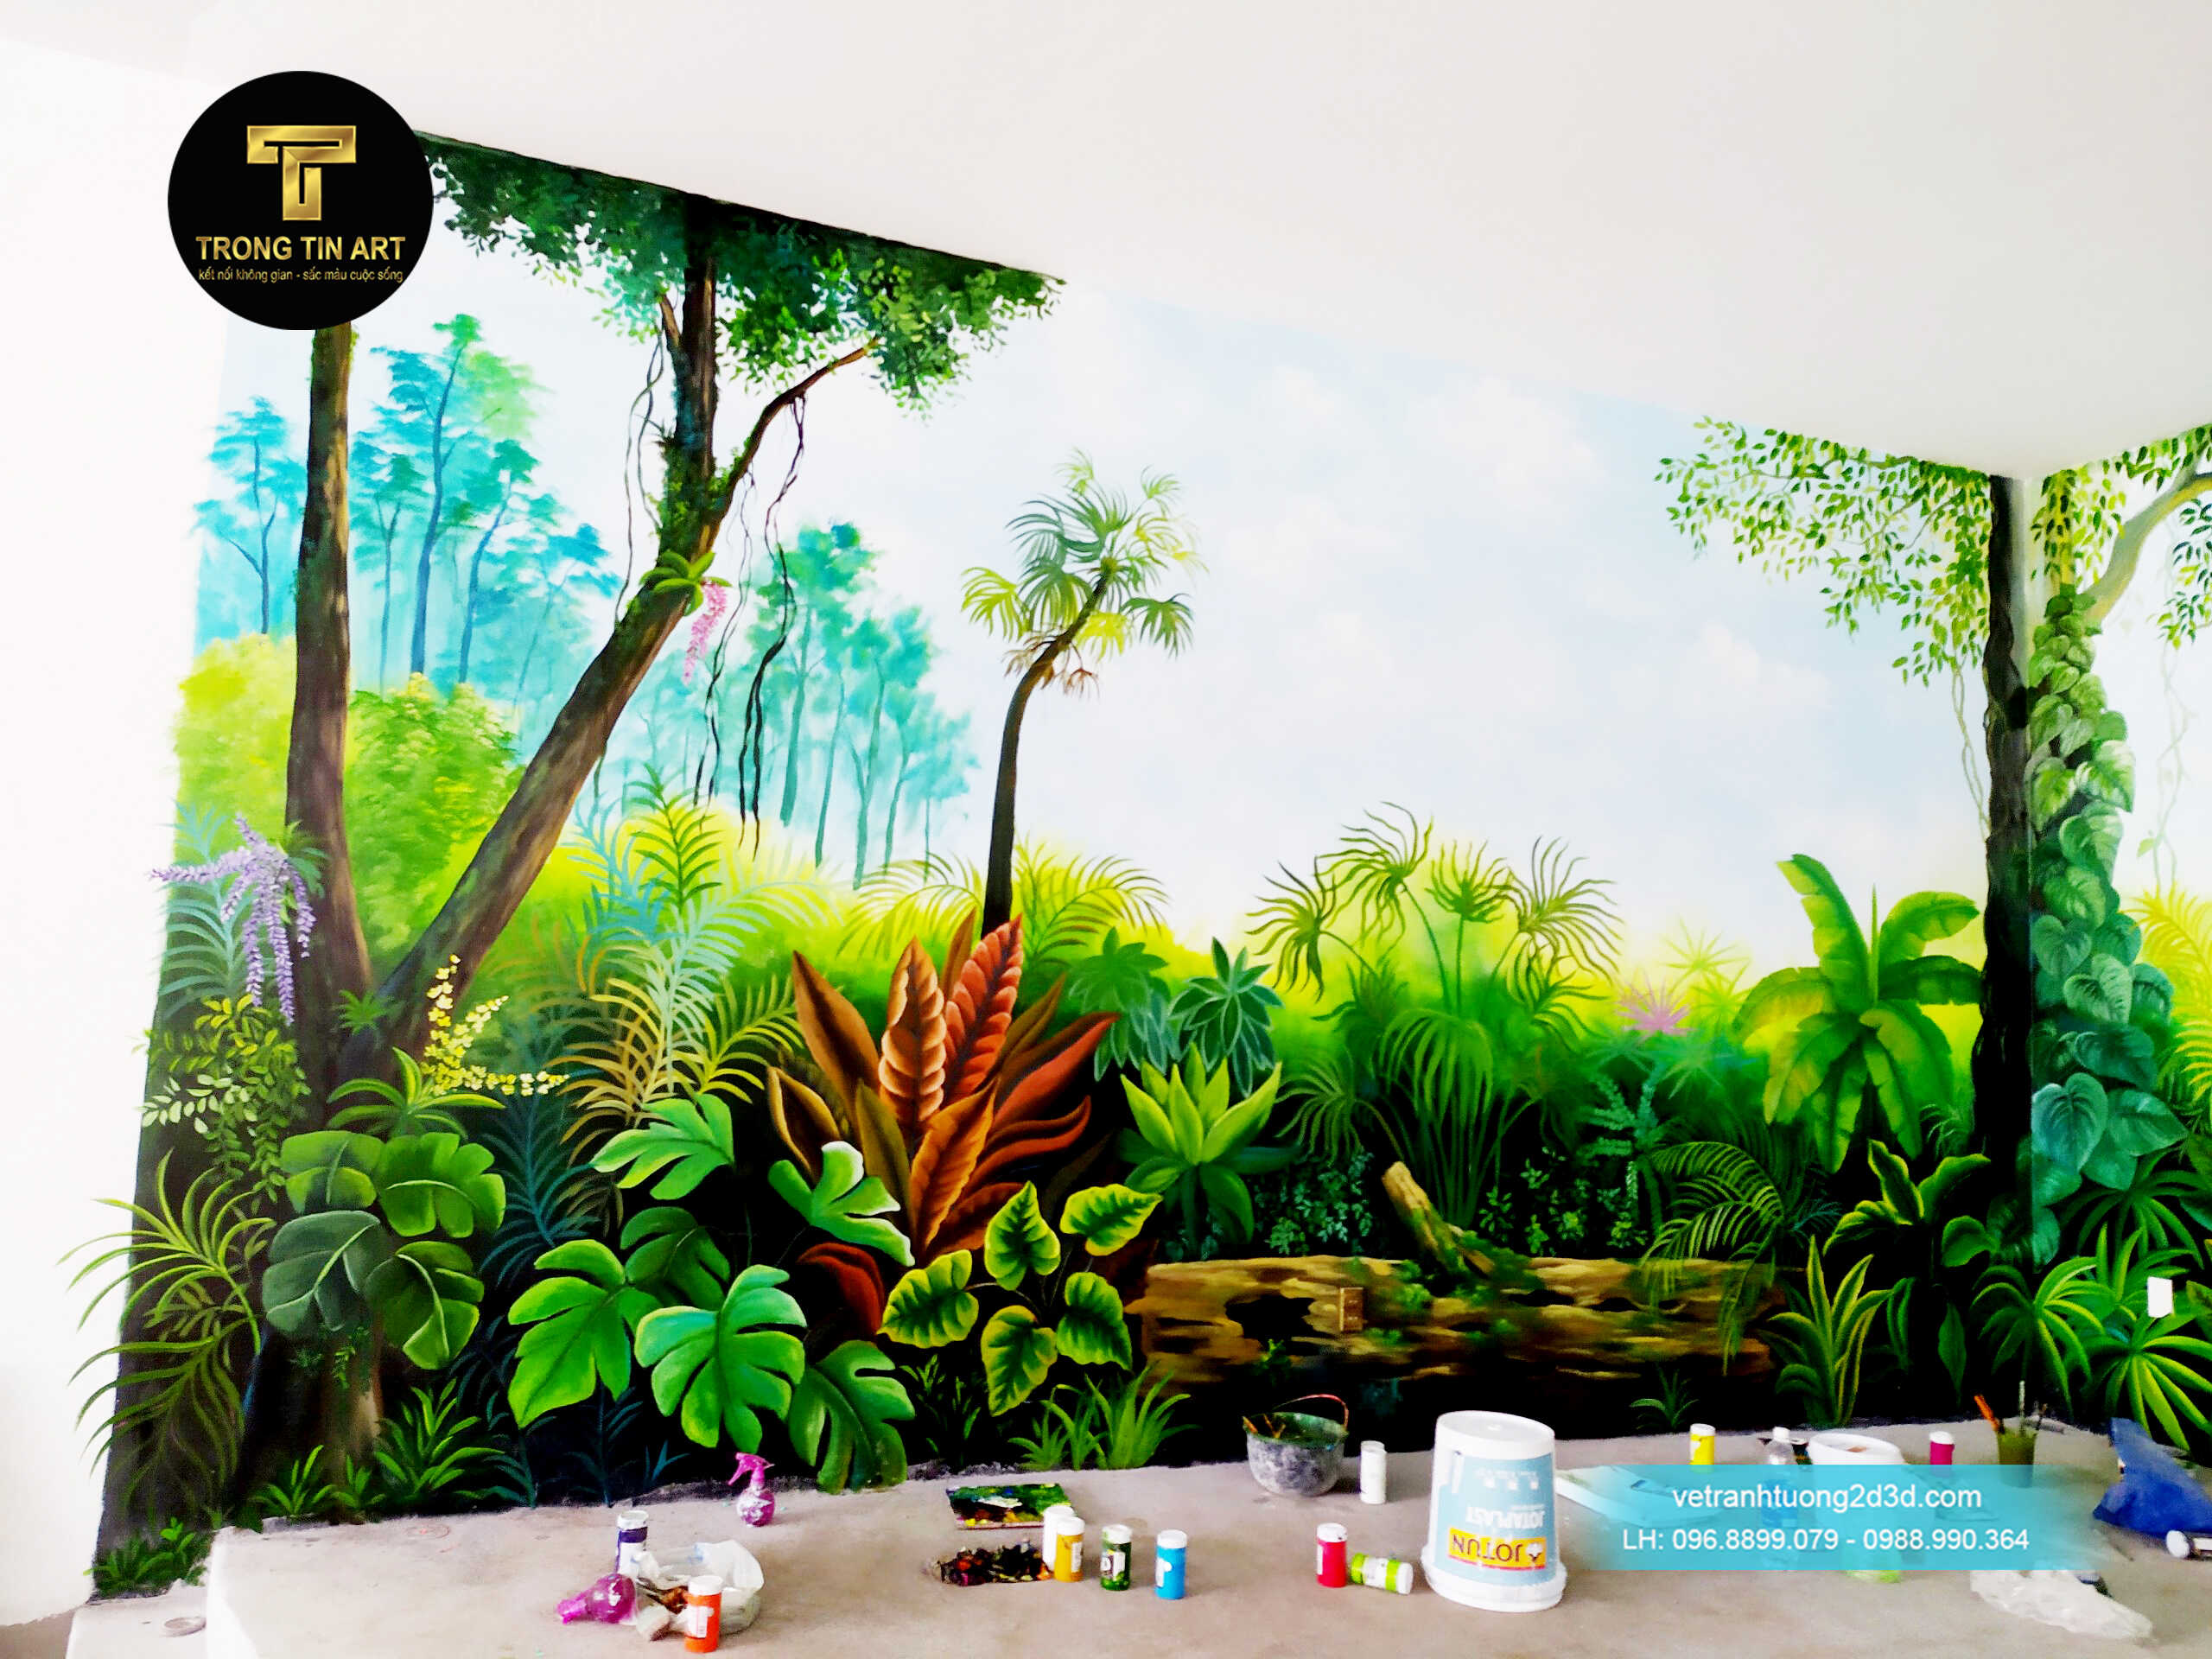 Tranh tường tropical,tranh rừng nhiệt đới,vẽ tranh tường hoa lá,tropical